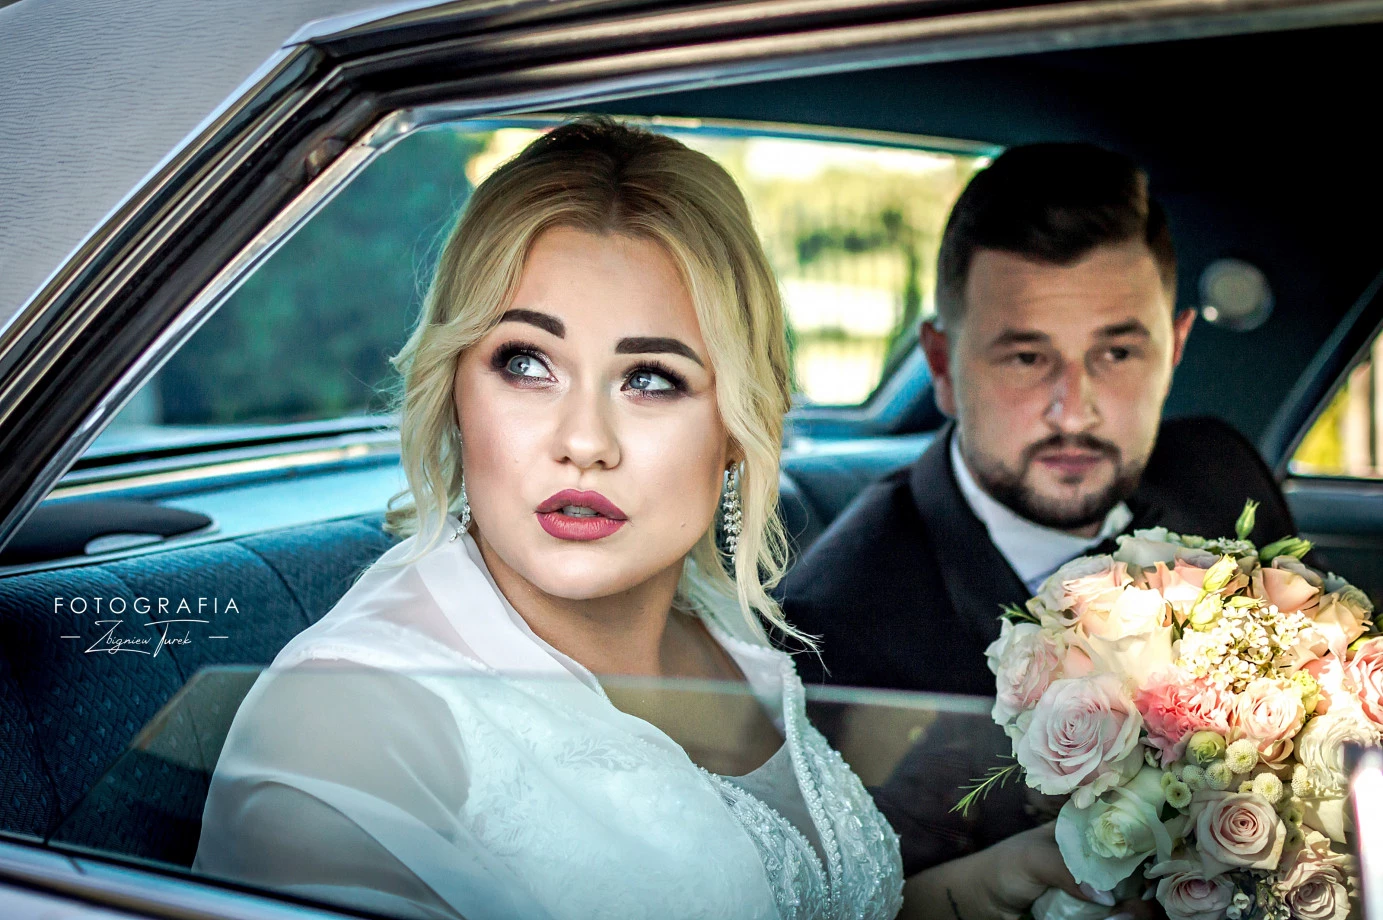 zdjęcia  fotograf zbigniew-turek portfolio zdjecia slubne inspiracje wesele plener slubny sesja slubna